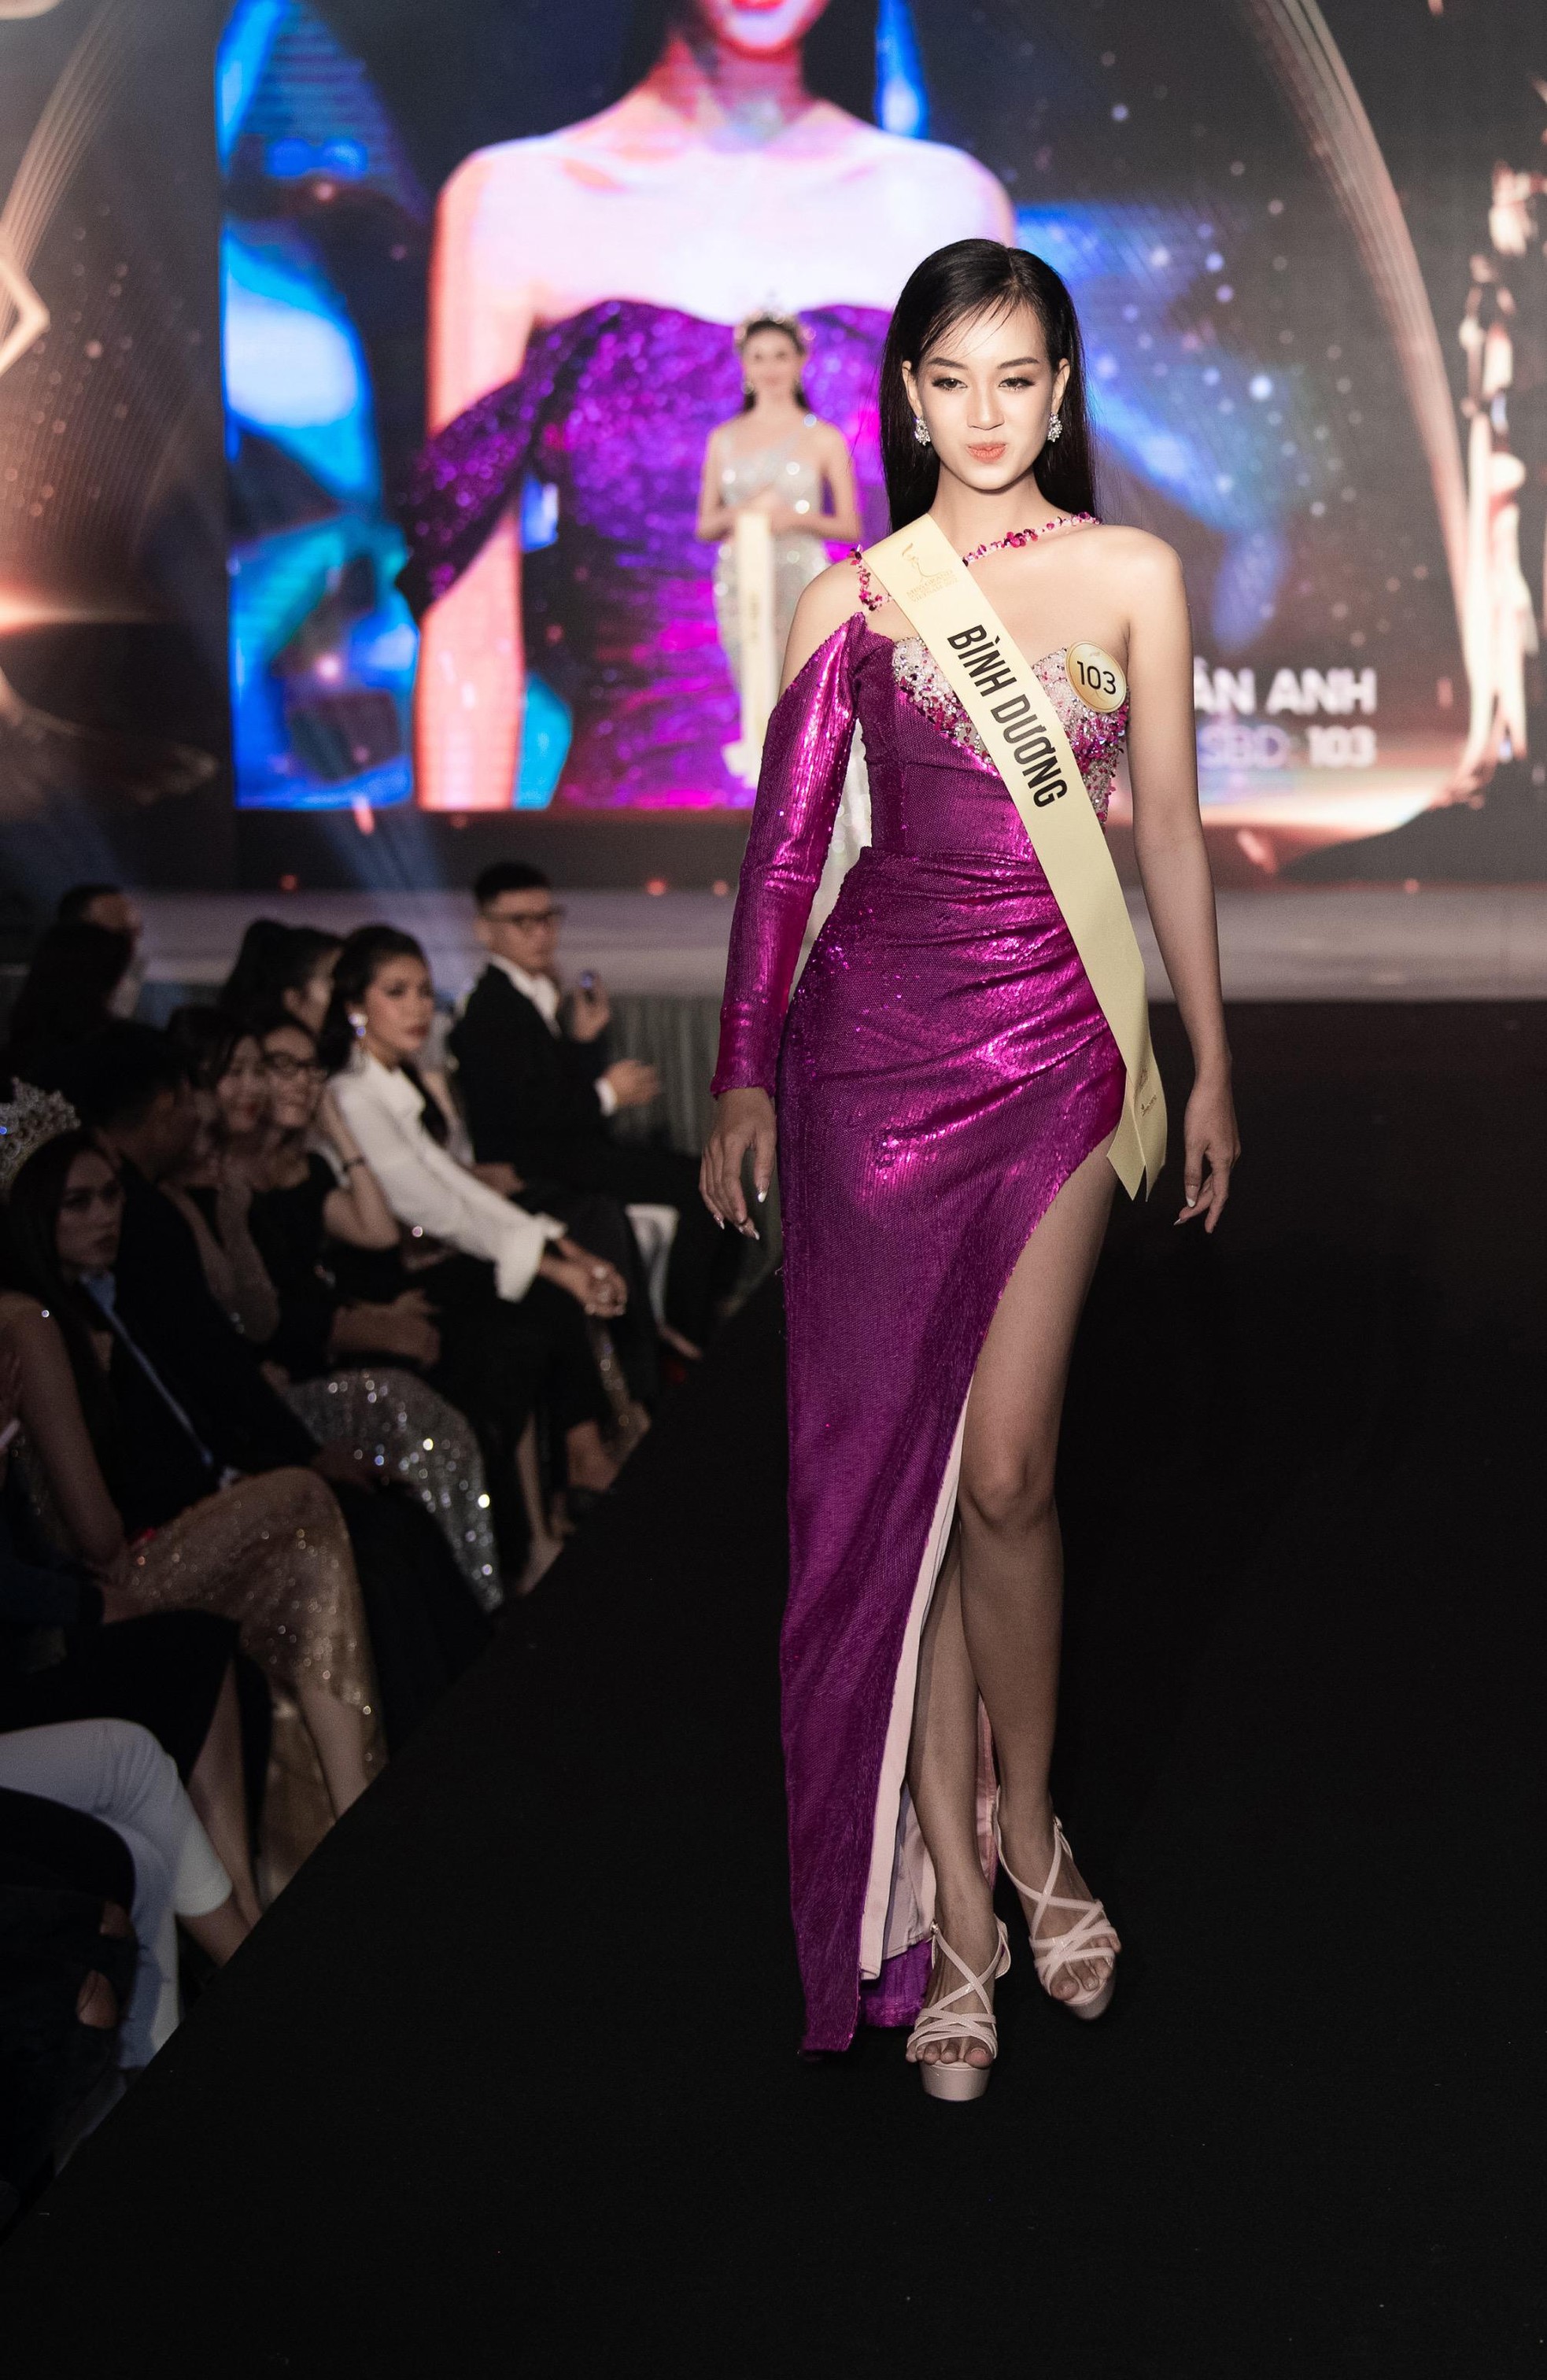 Mai Ngô, Quỳnh Châu tung chiêu catwalk độc đáo tại lễ nhận sash của Miss Grand Vietnam 2022 - Ảnh 8.